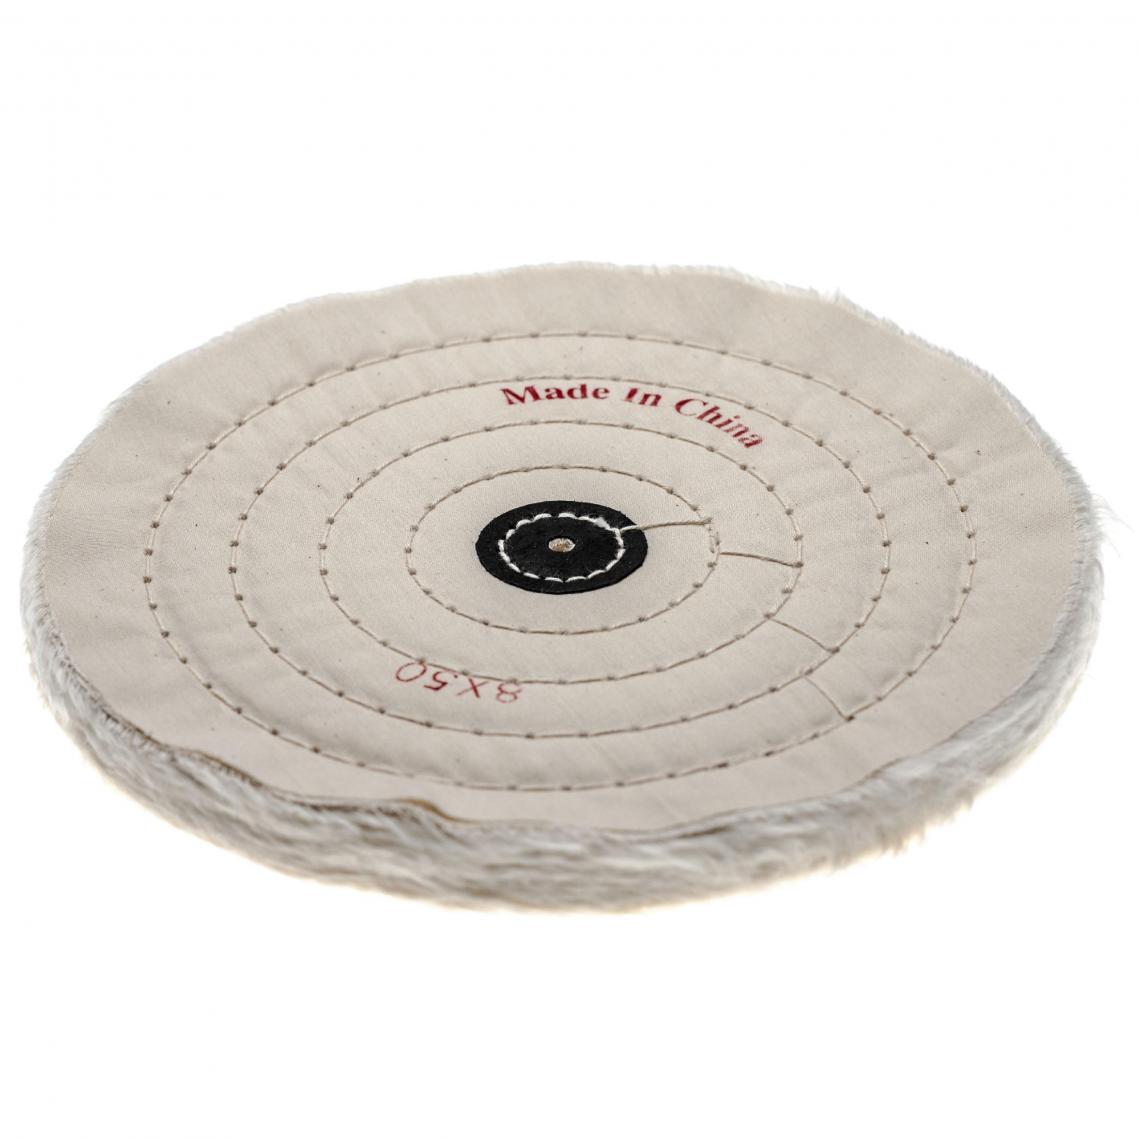 Vhbw - vhbw Bonnet de lustrage pour polisseuse d'angle, perceuse courante - Pad de rechange avec diamètre de 19,8cm, coton - Clouterie